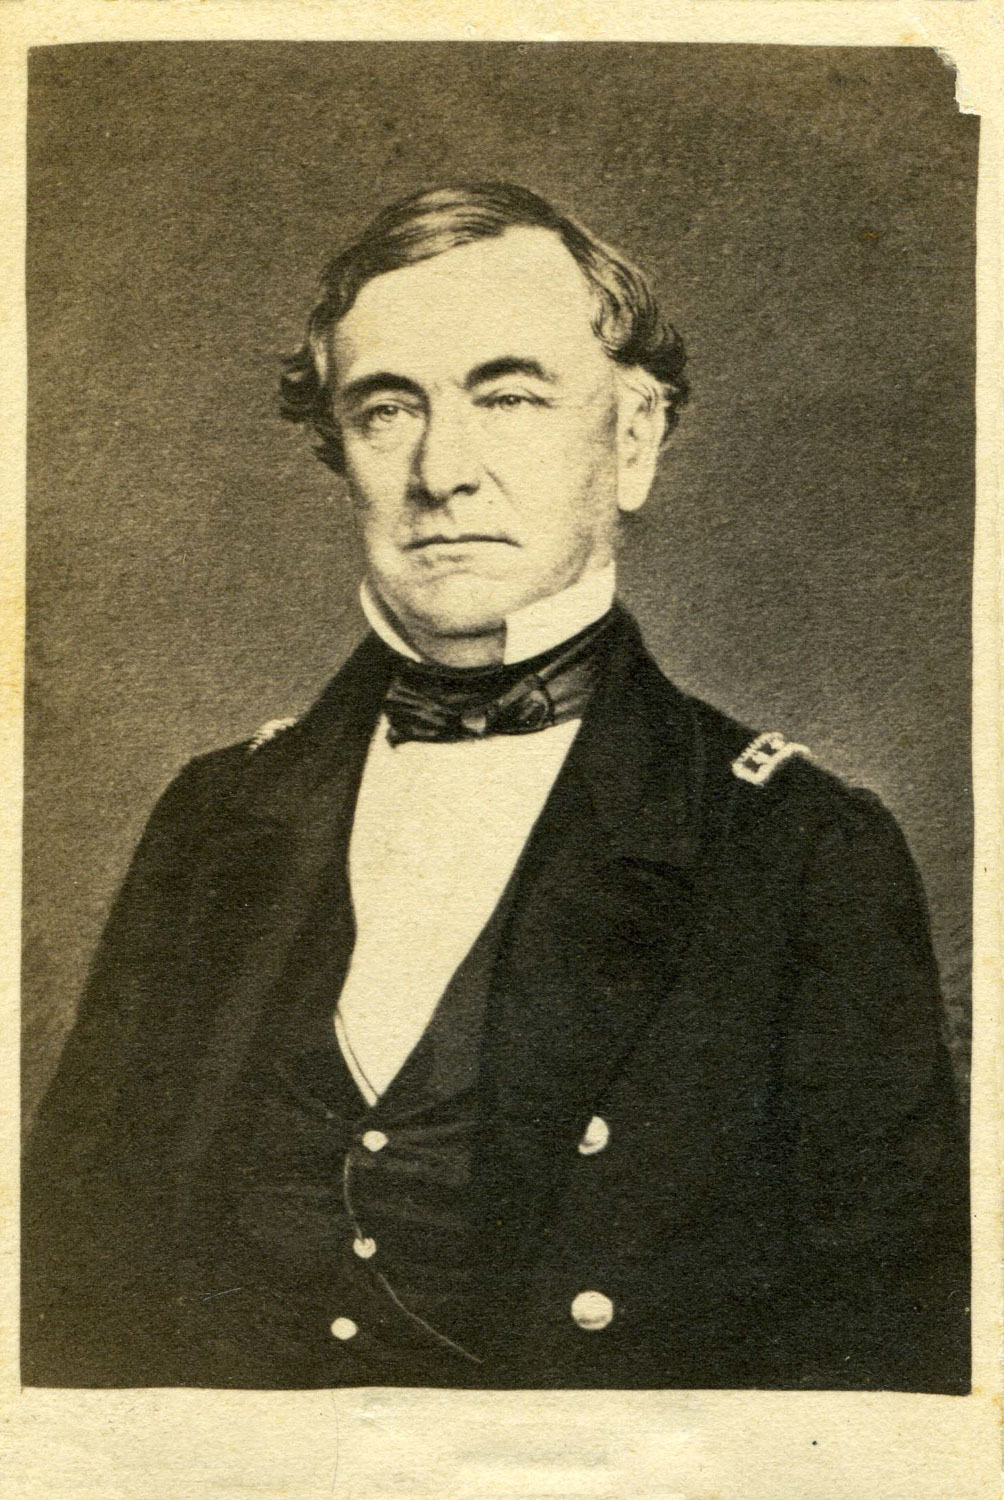 Naval Lieutenant Thomas Huger